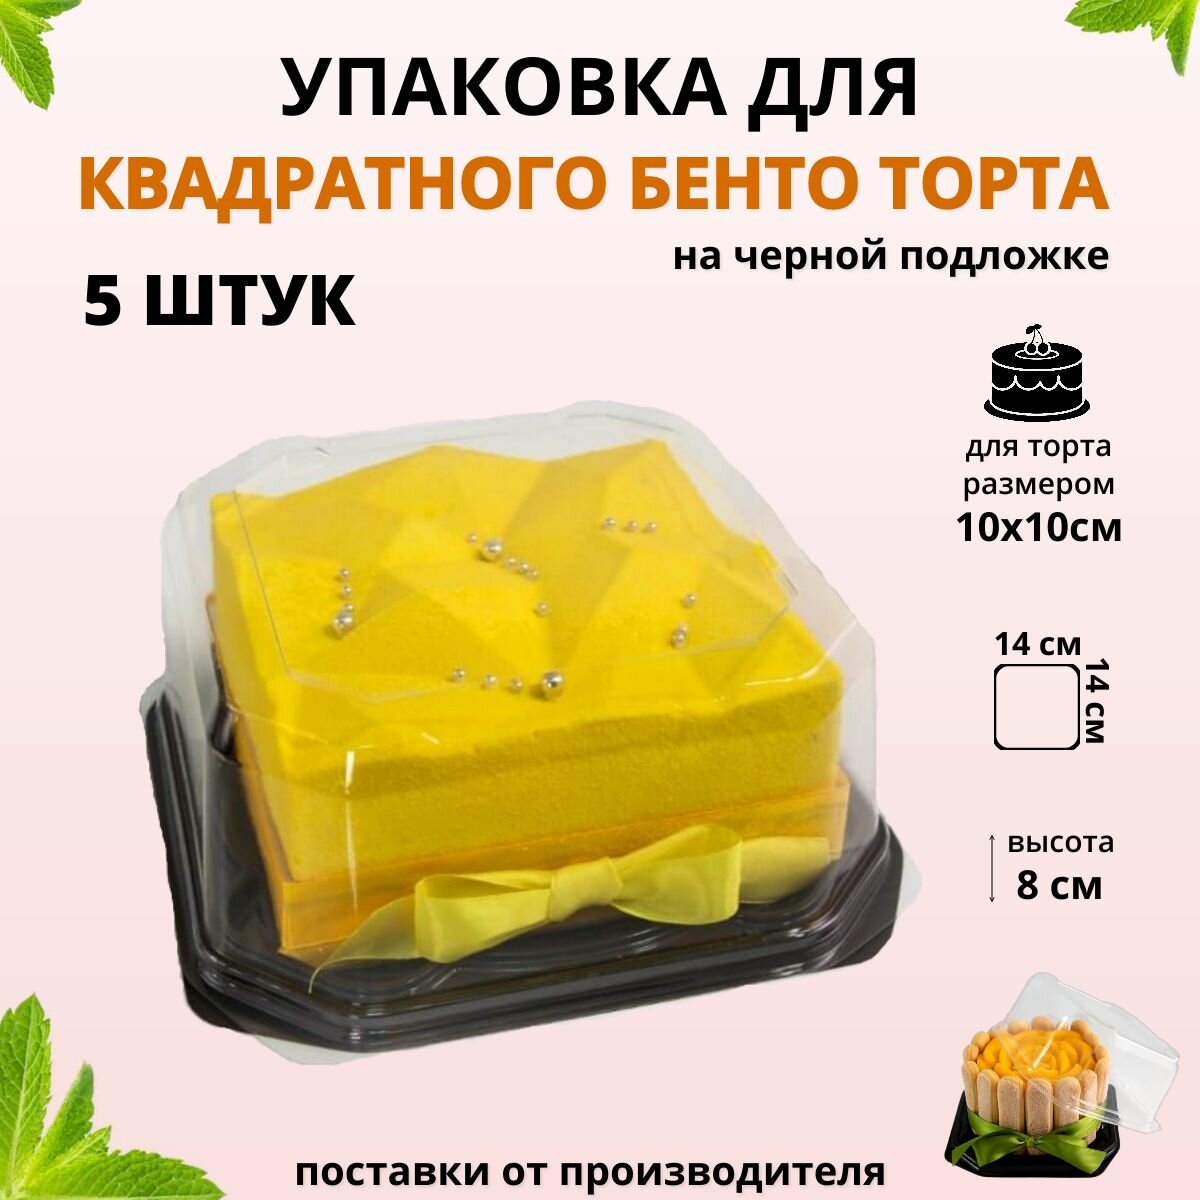 Упаковка для бенто торта, контейнер одноразовый под квадратный торт 10х10 см, 5 штук, черный